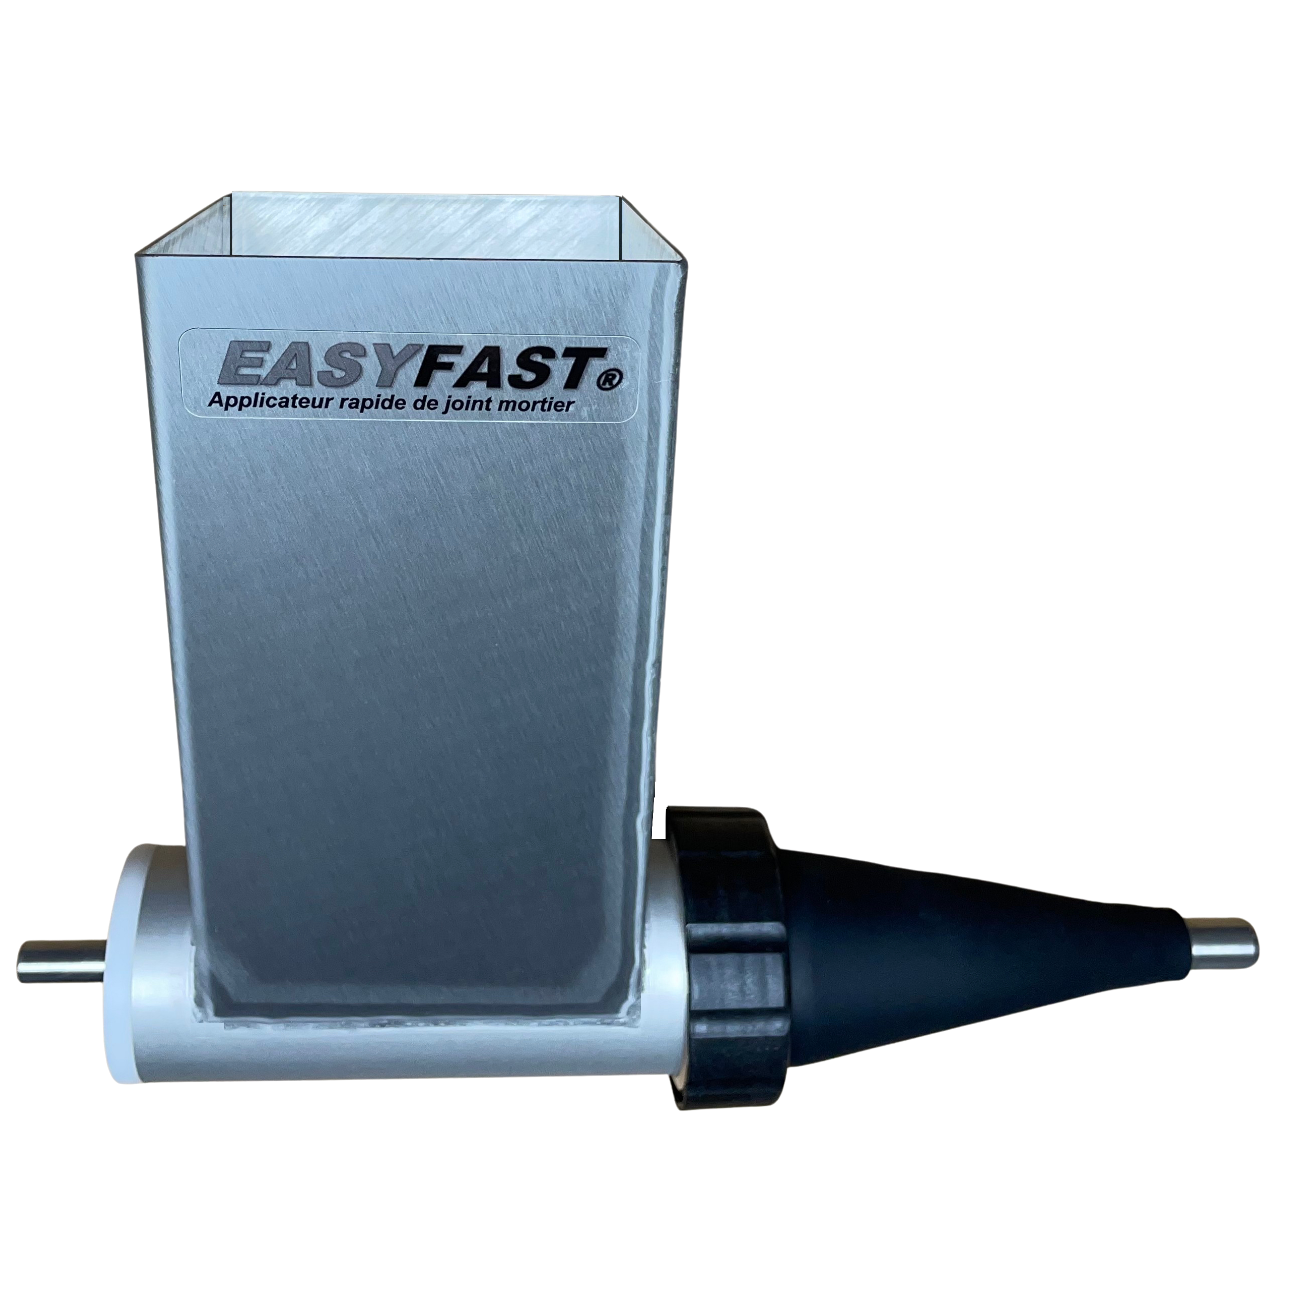 EASYFAST® - Applicateur rapide de joint mortier 0